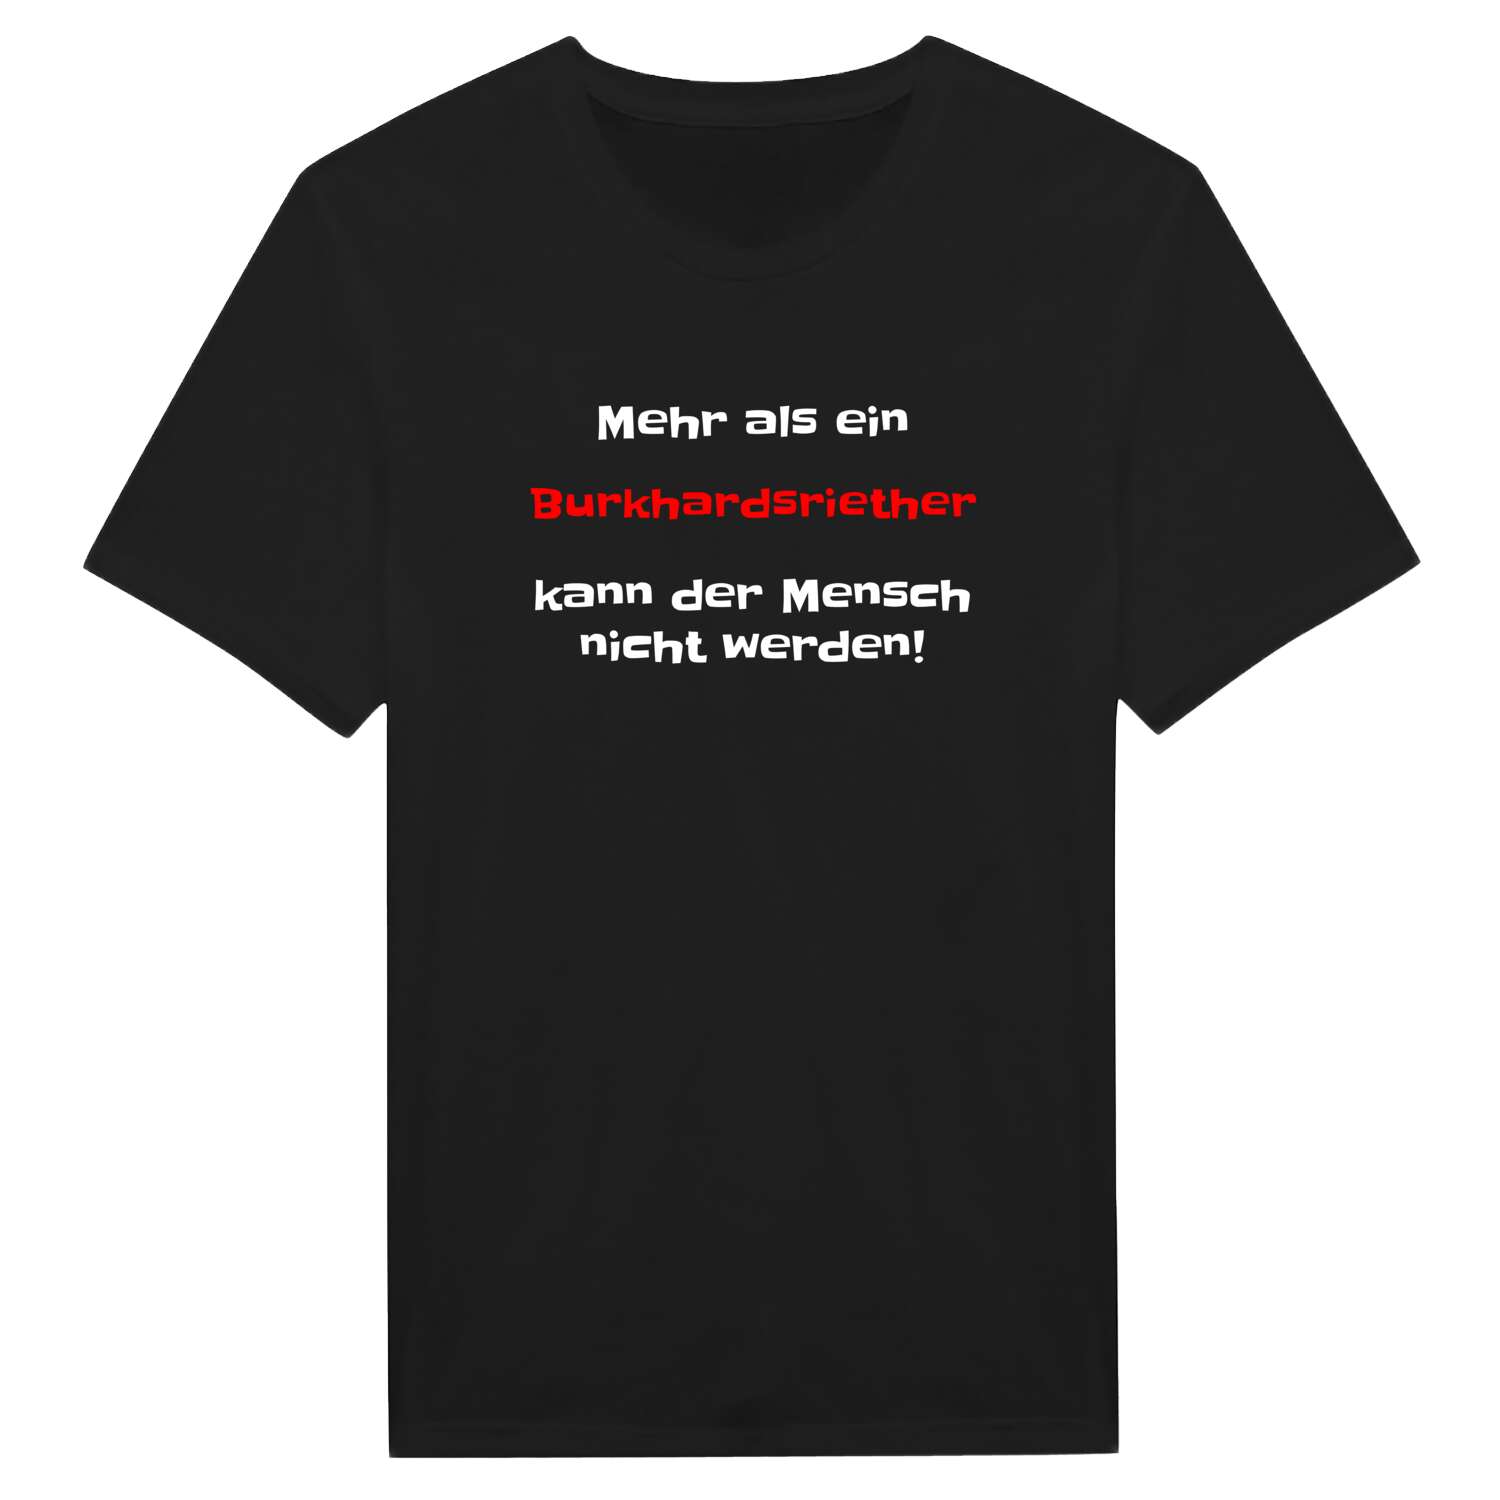 Burkhardsrieth T-Shirt »Mehr als ein«